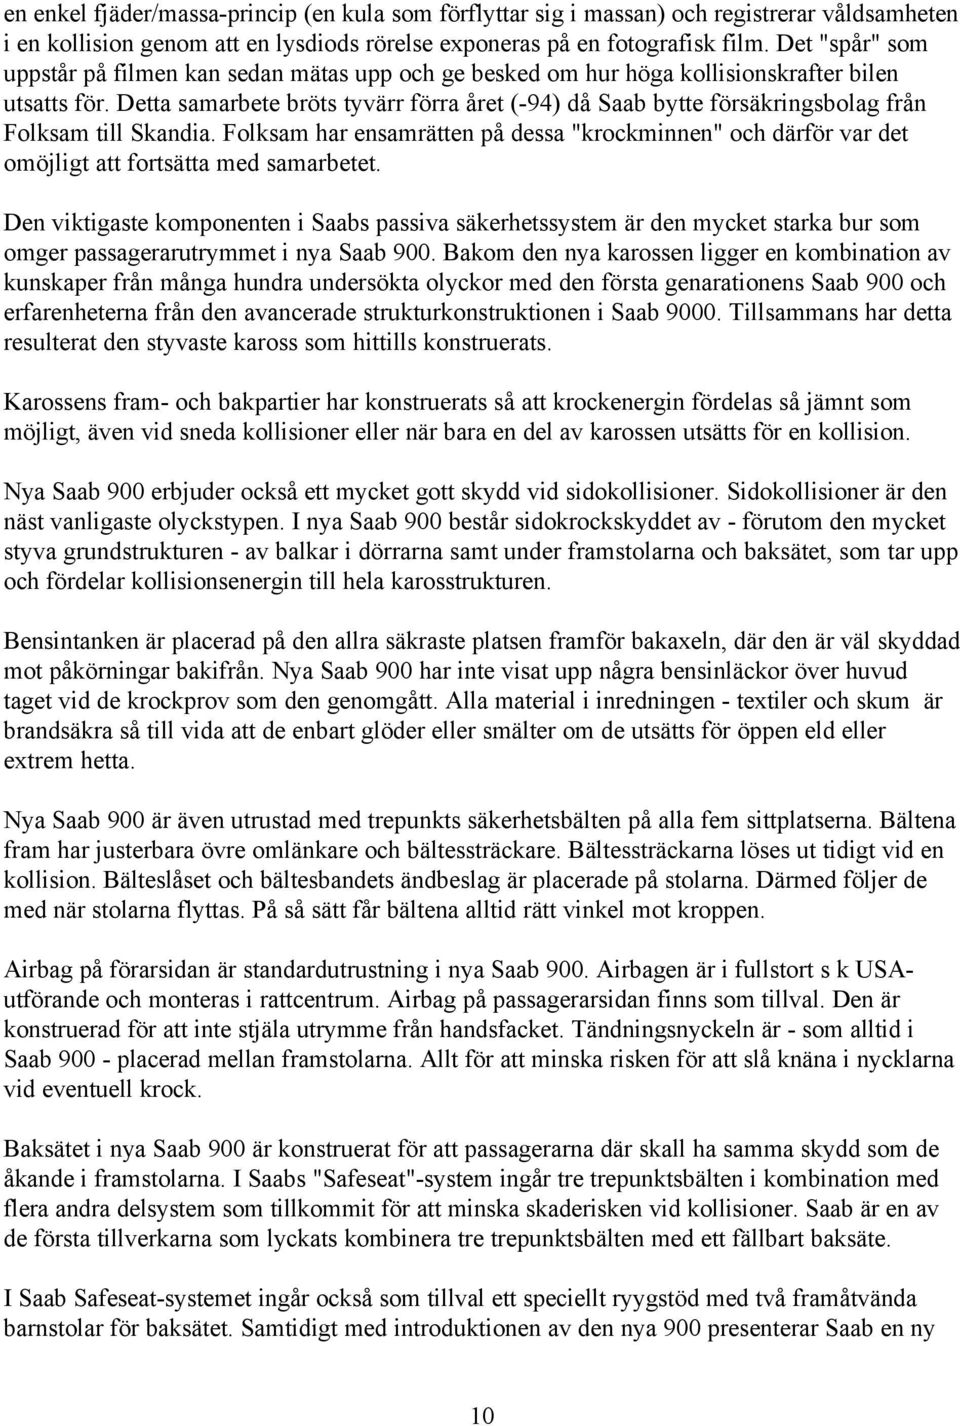 Detta samarbete bröts tyvärr förra året (-94) då Saab bytte försäkringsbolag från Folksam till Skandia.